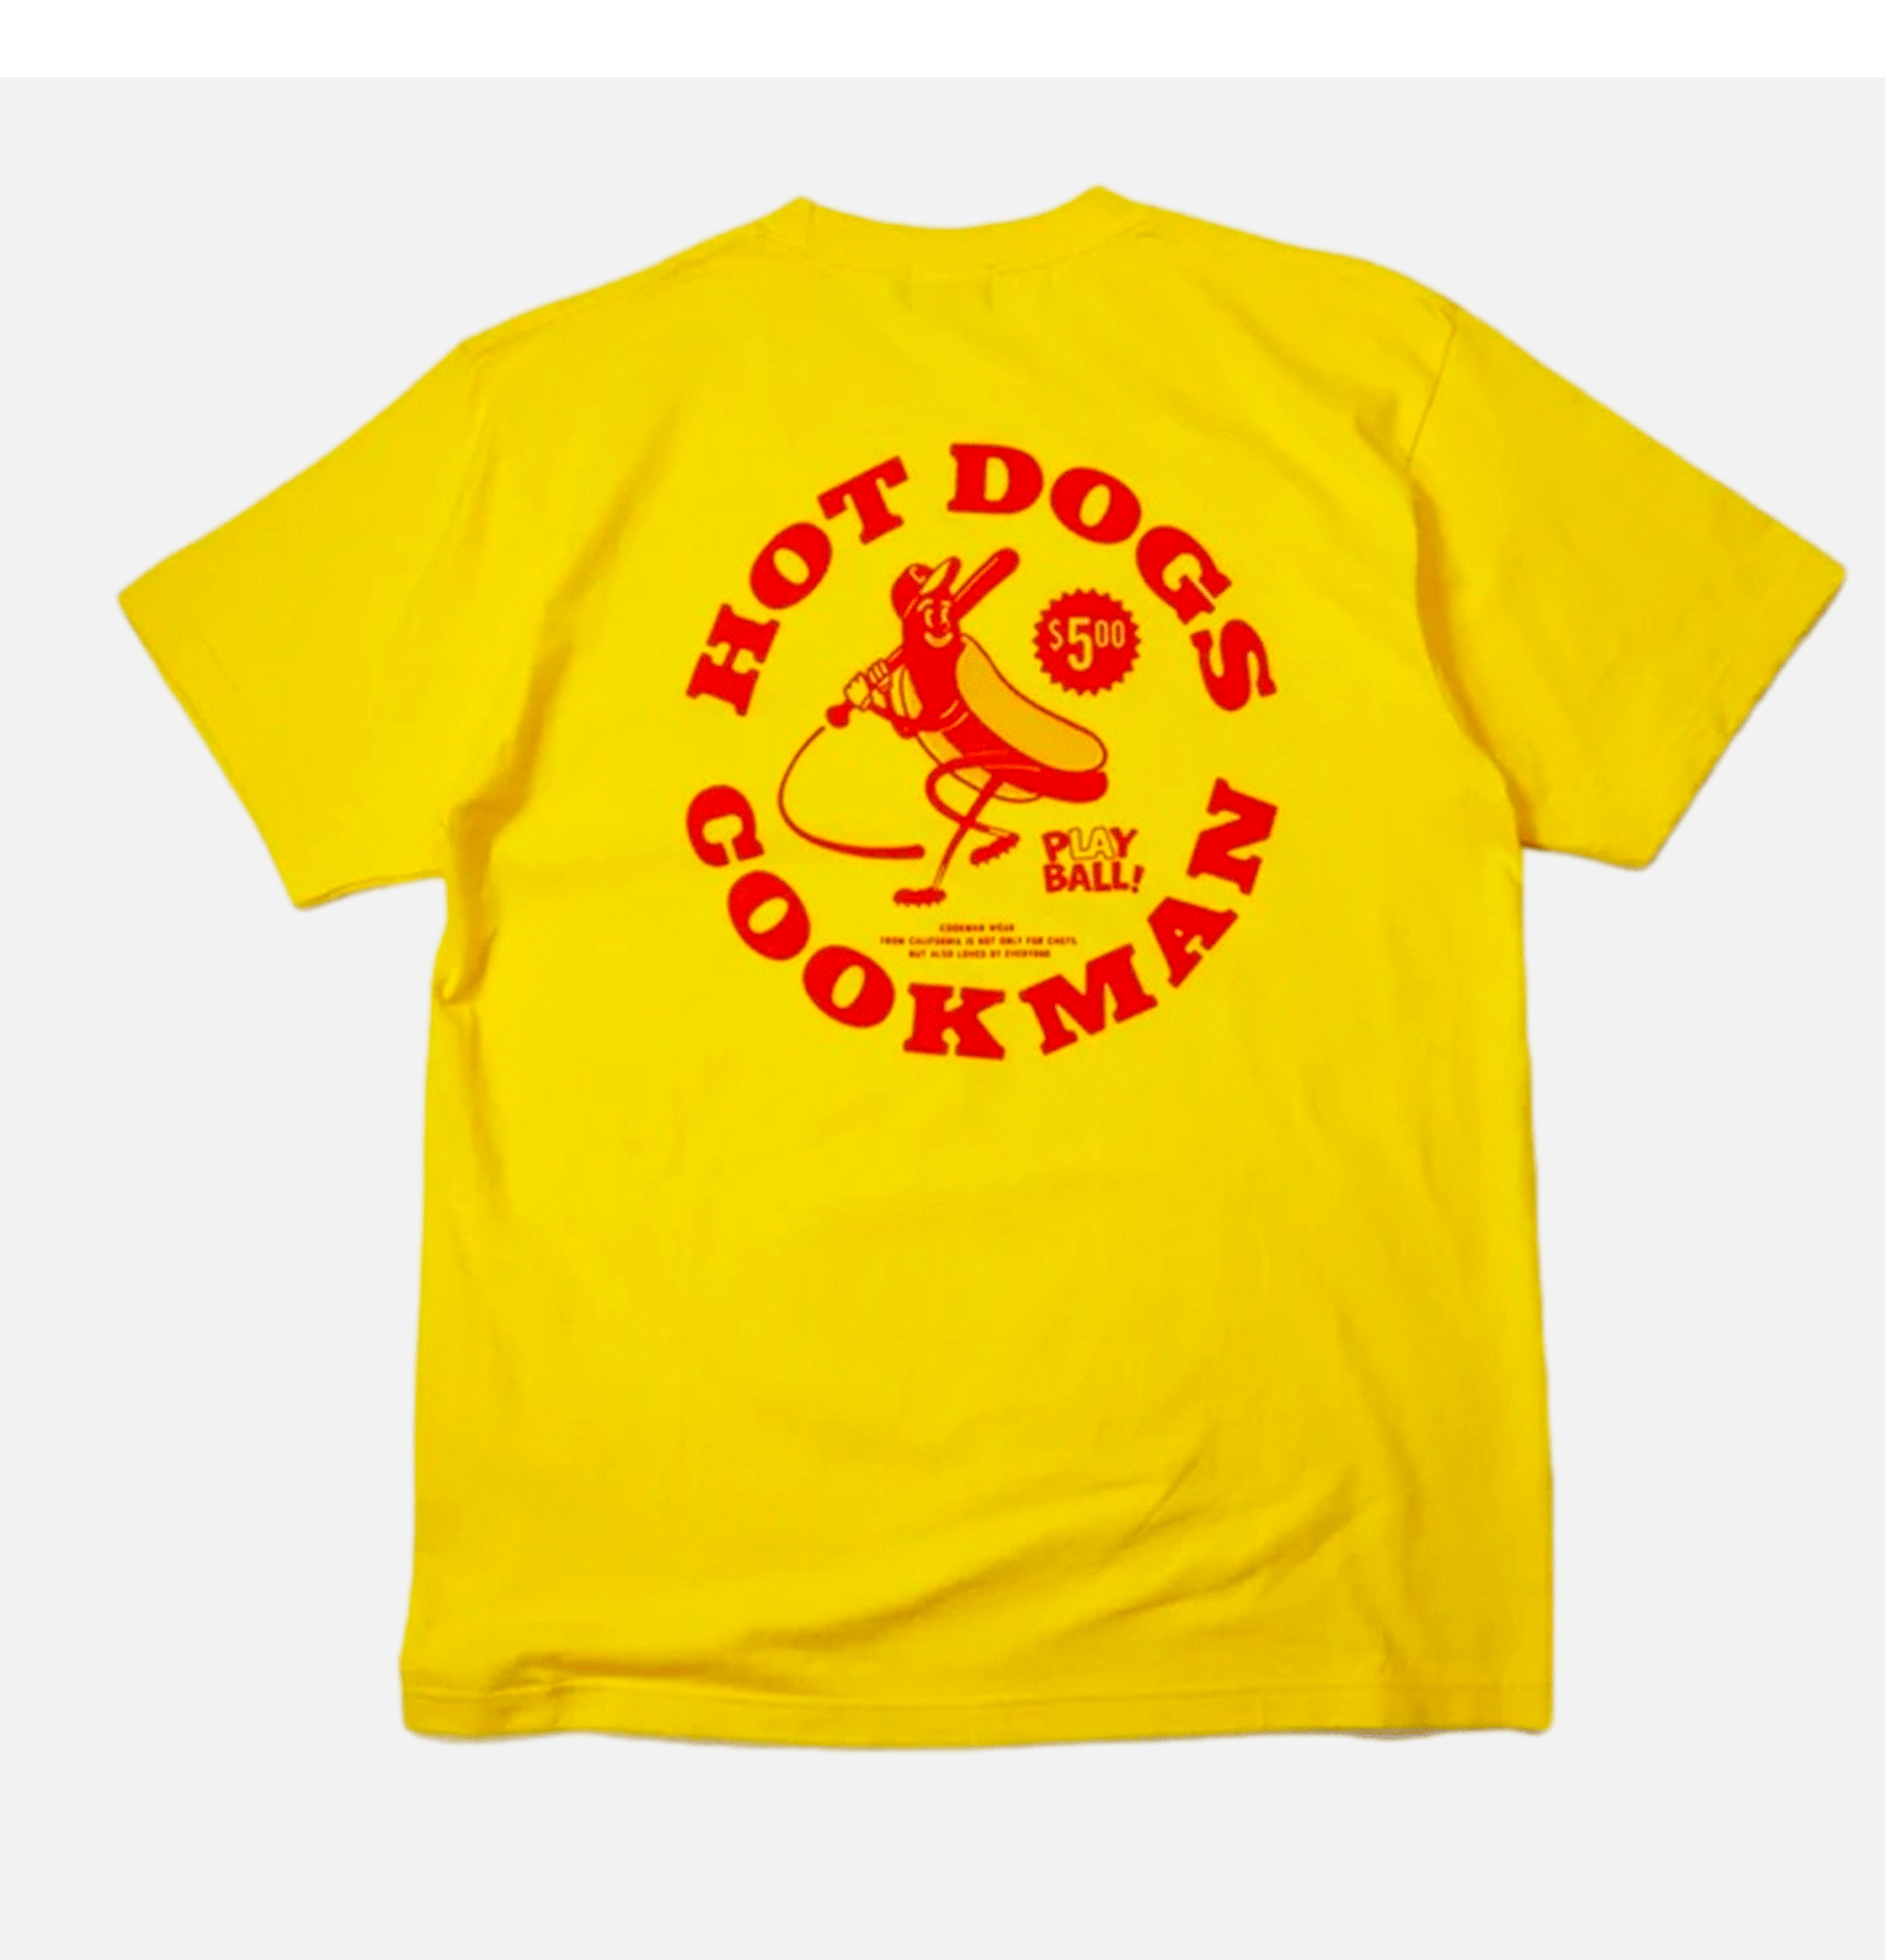 Tee Shirt Hotdog Hitter Yellow